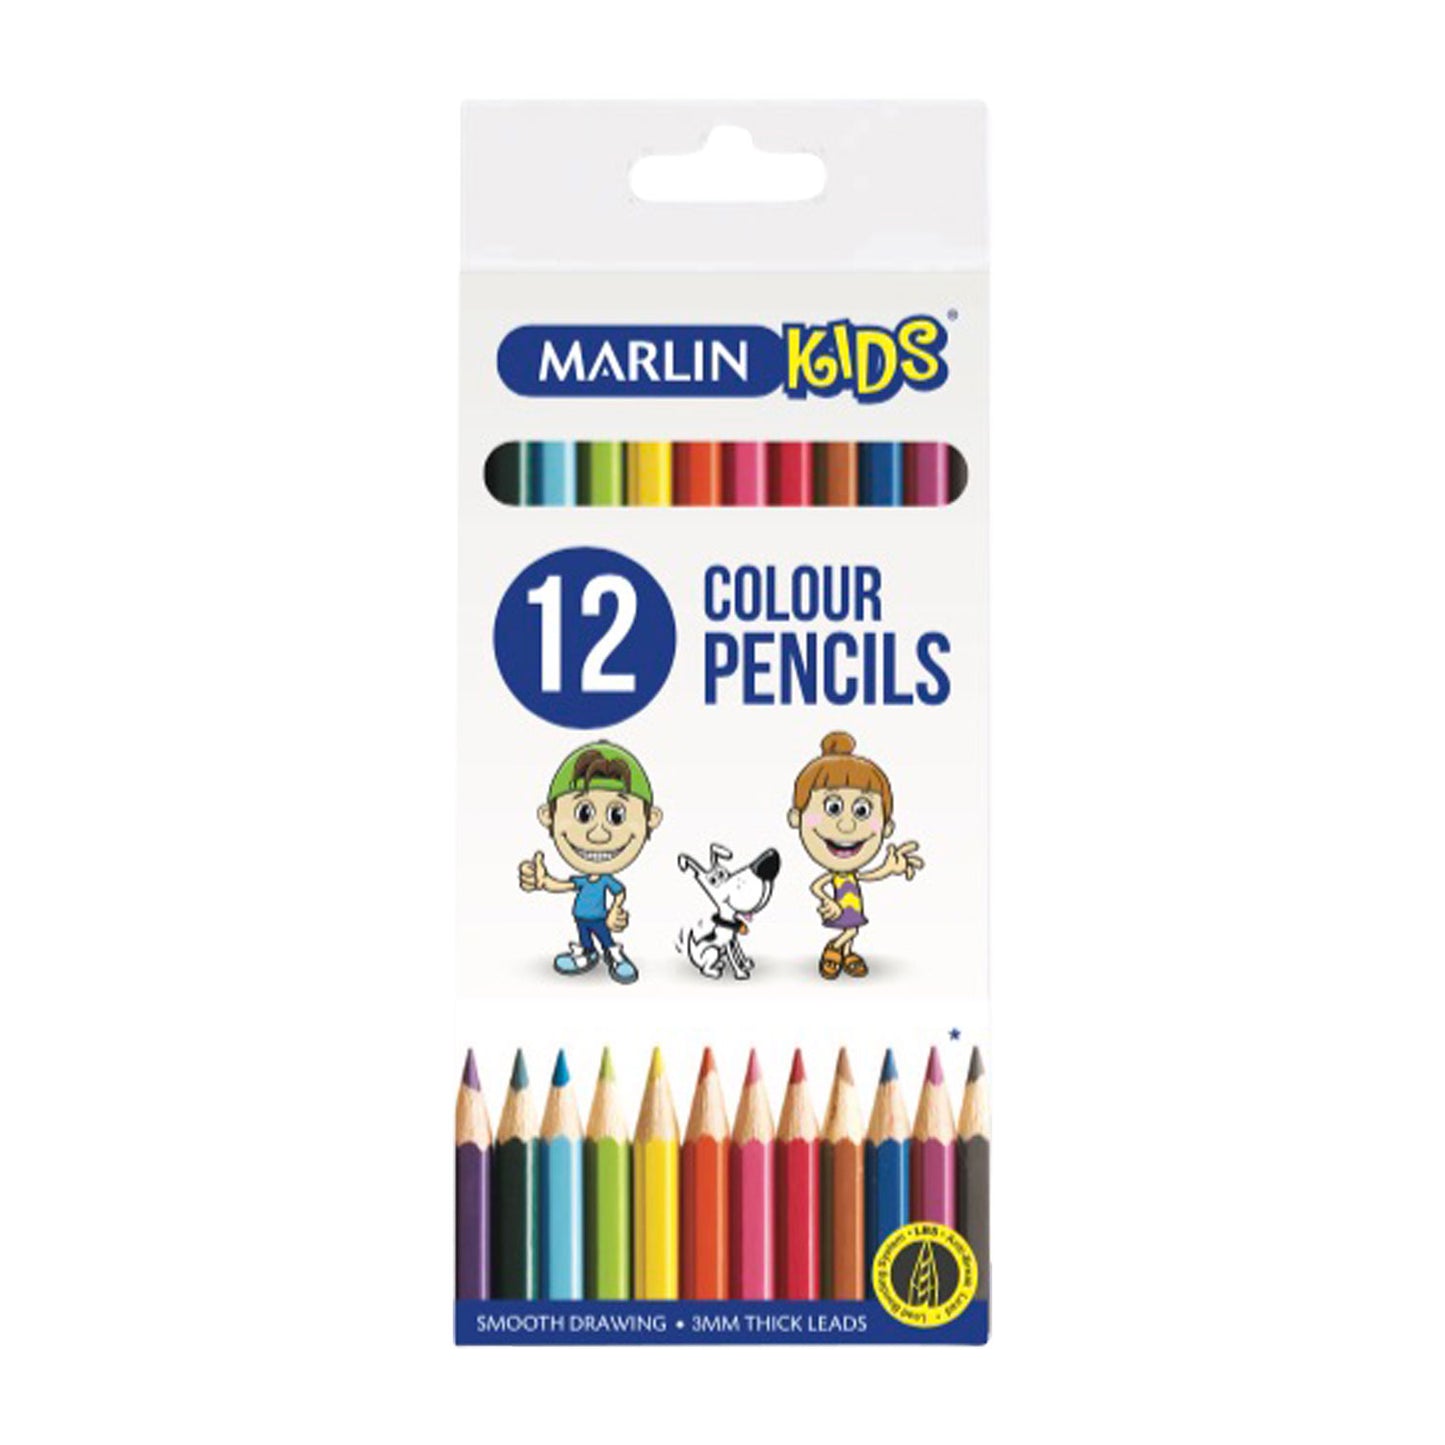 Marlin Kids Colour Pencils (12 Colour Pencils per pack, 12 Packs)